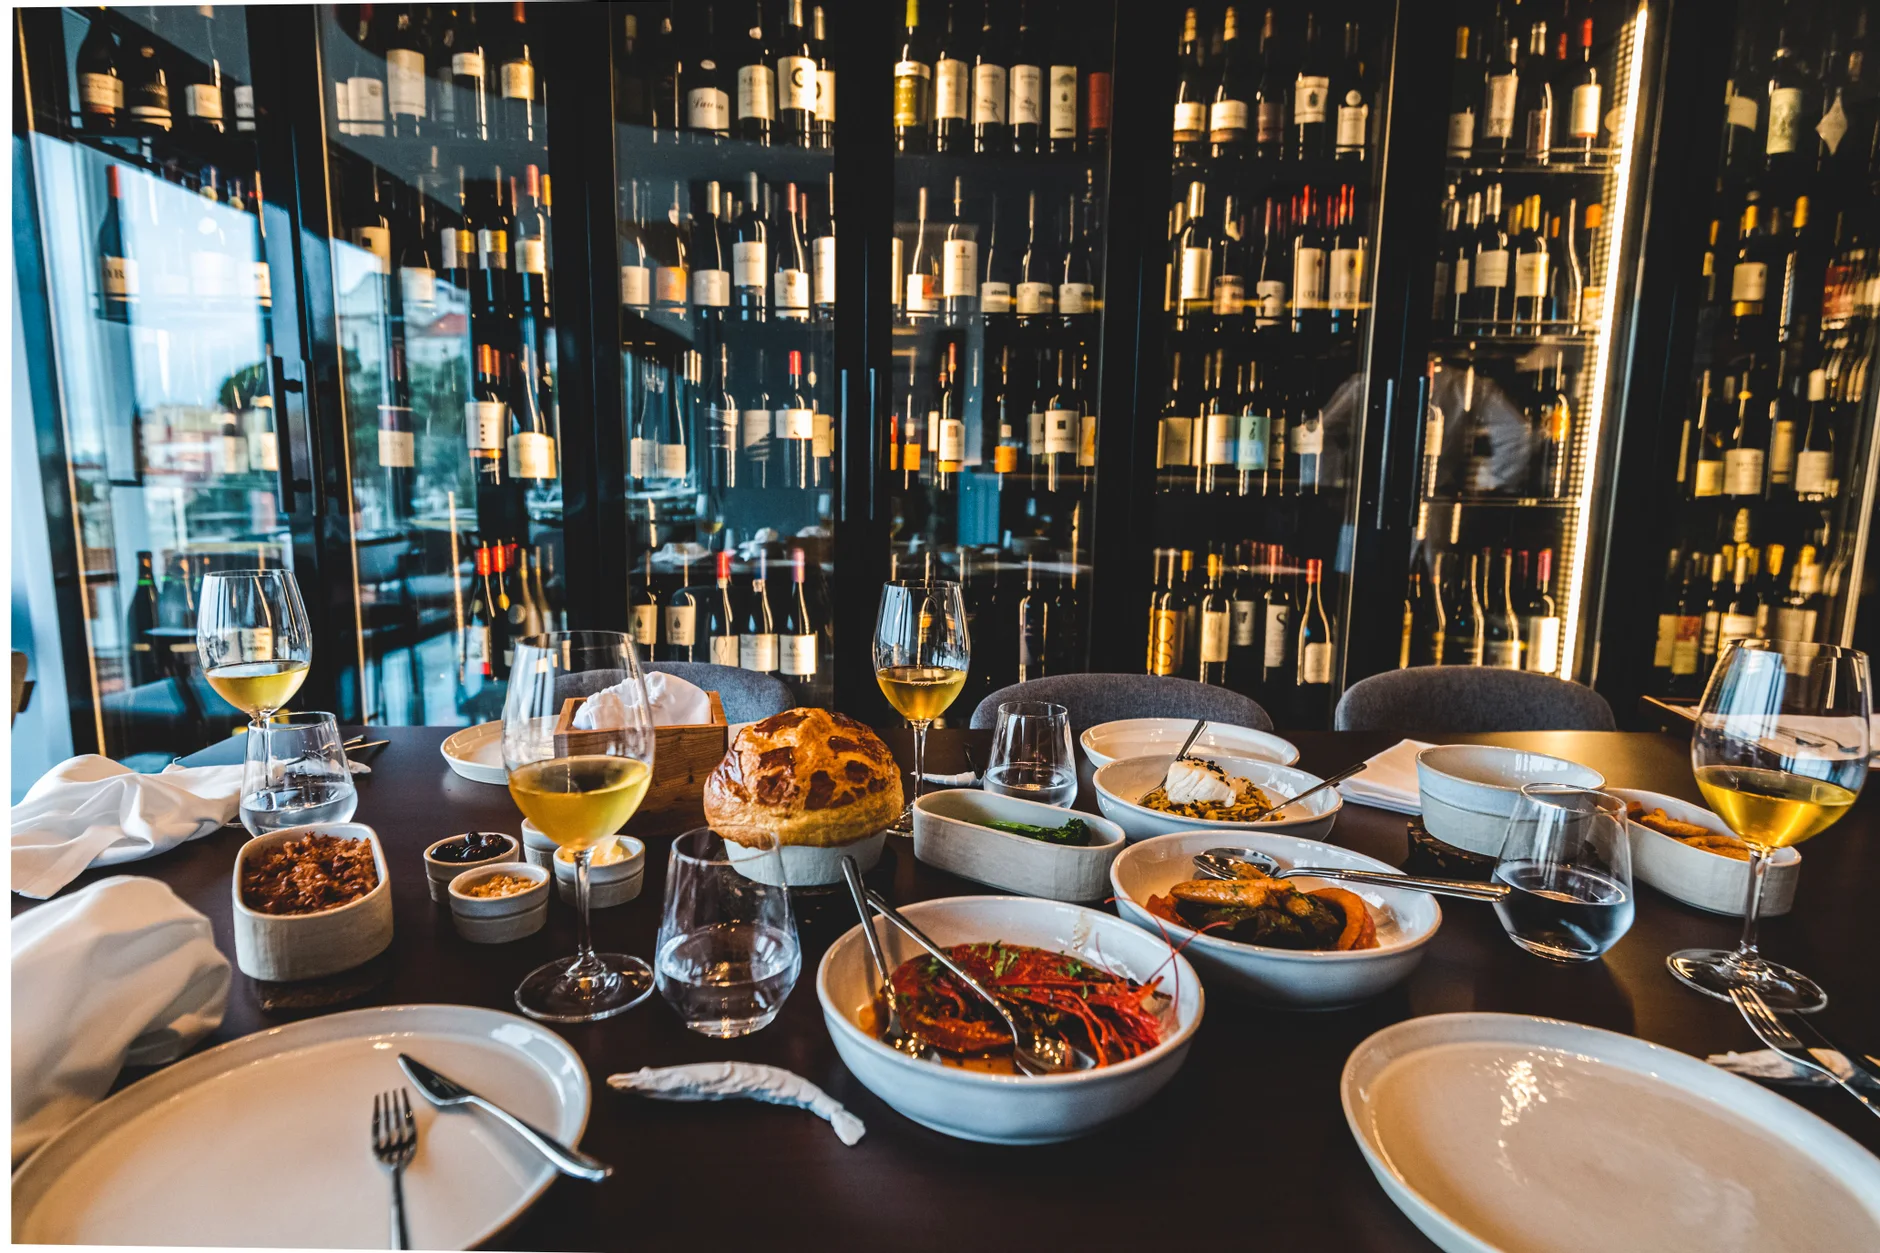 Mesa de restaurante com vários pratos e copos de vinho